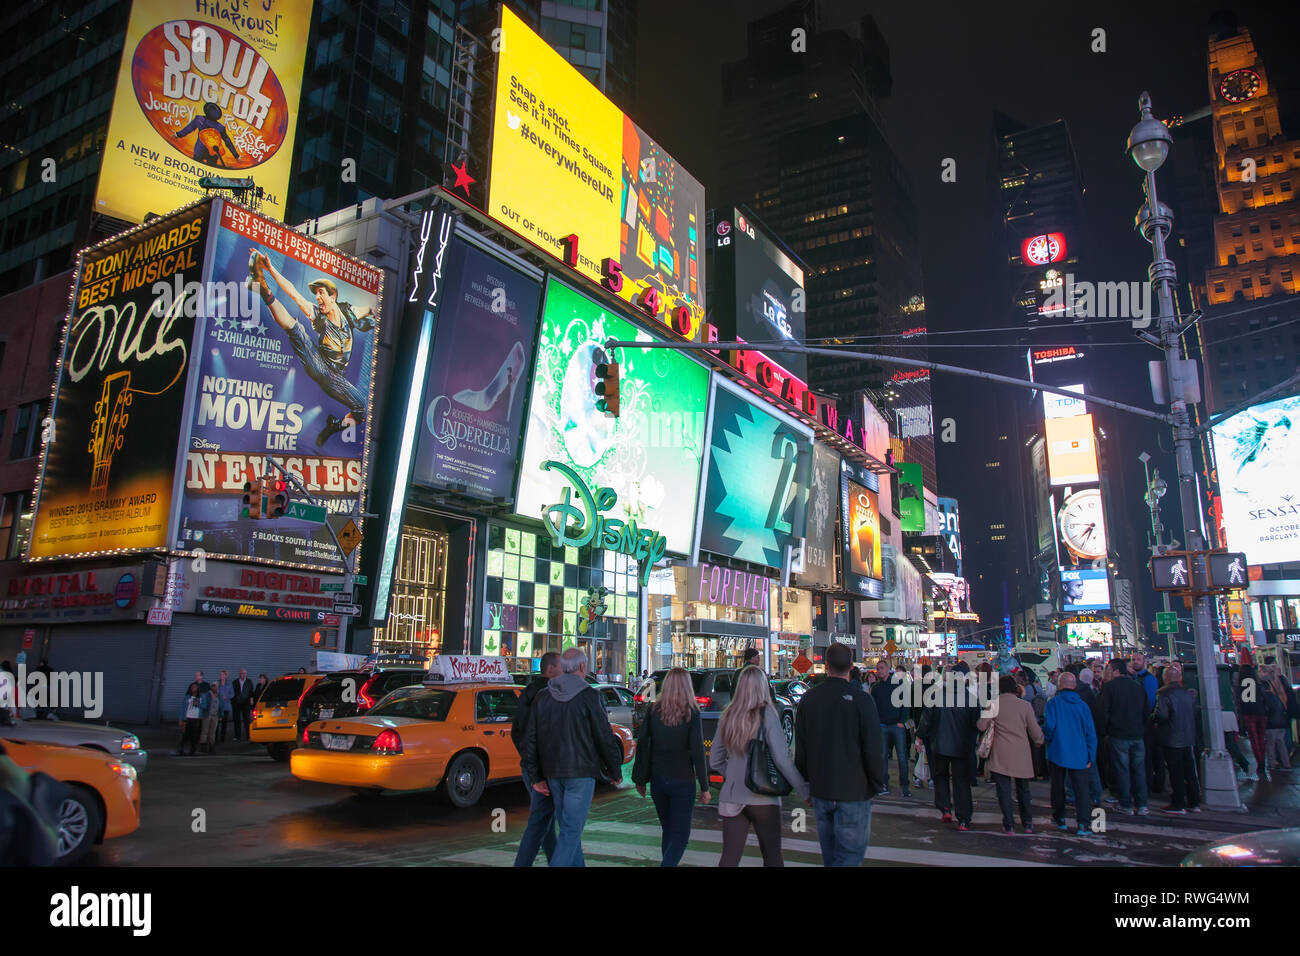 NEW YORK, USA - 20. SEPTEMBER 2013: night street Broadway in New York. Gelbes Taxi, viele Menschen und Werbung outdoor Stockfoto